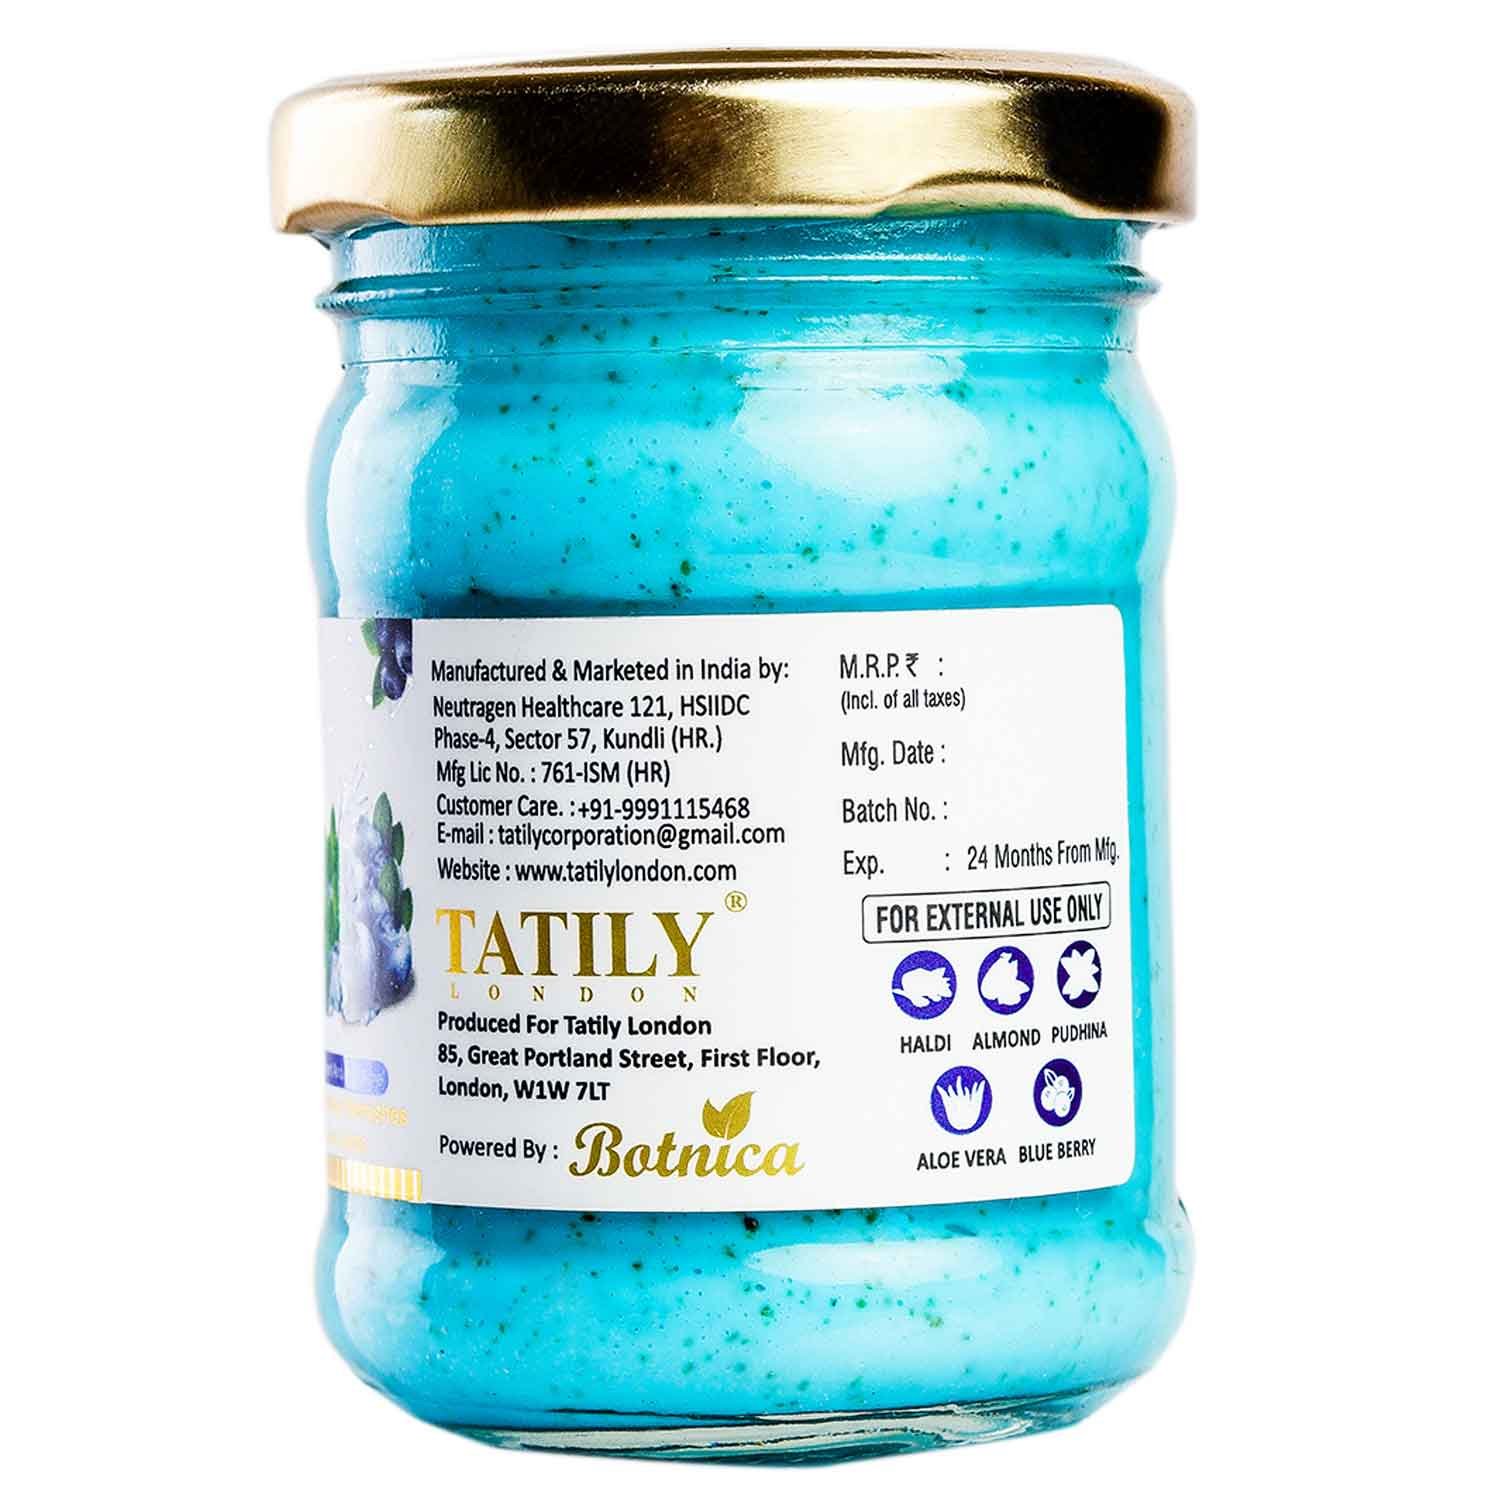 tatily-london-blueberry-mint-face-_-body-scrub-100g-3